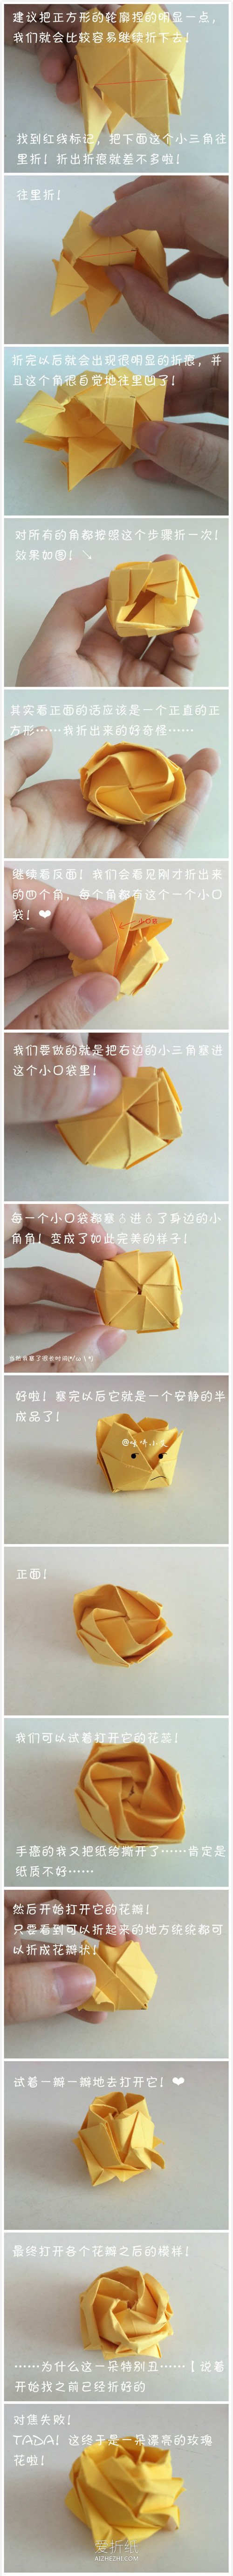 怎么折纸立体川崎玫瑰的折法图解- www.aizhezhi.com